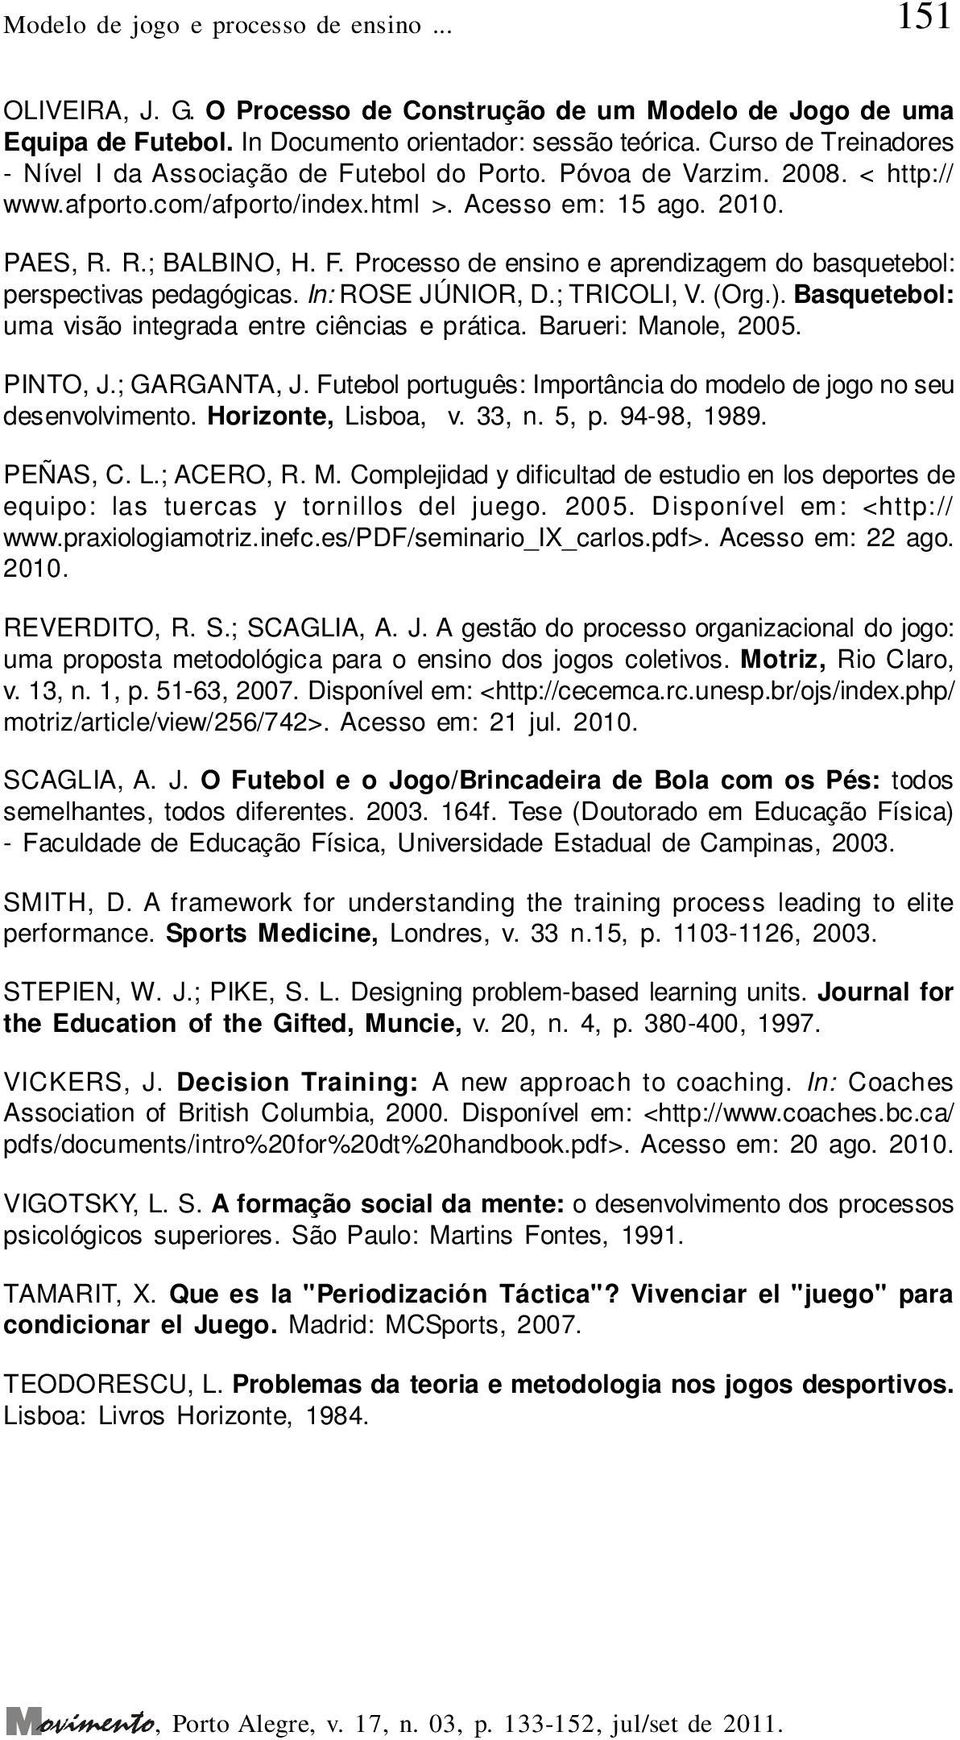 In: ROSE JÚNIOR, D.; TRICOLI, V. (Org.). Basquetebol: uma visão integrada entre ciências e prática. Barueri: Manole, 2005. PINTO, J.; GARGANTA, J.